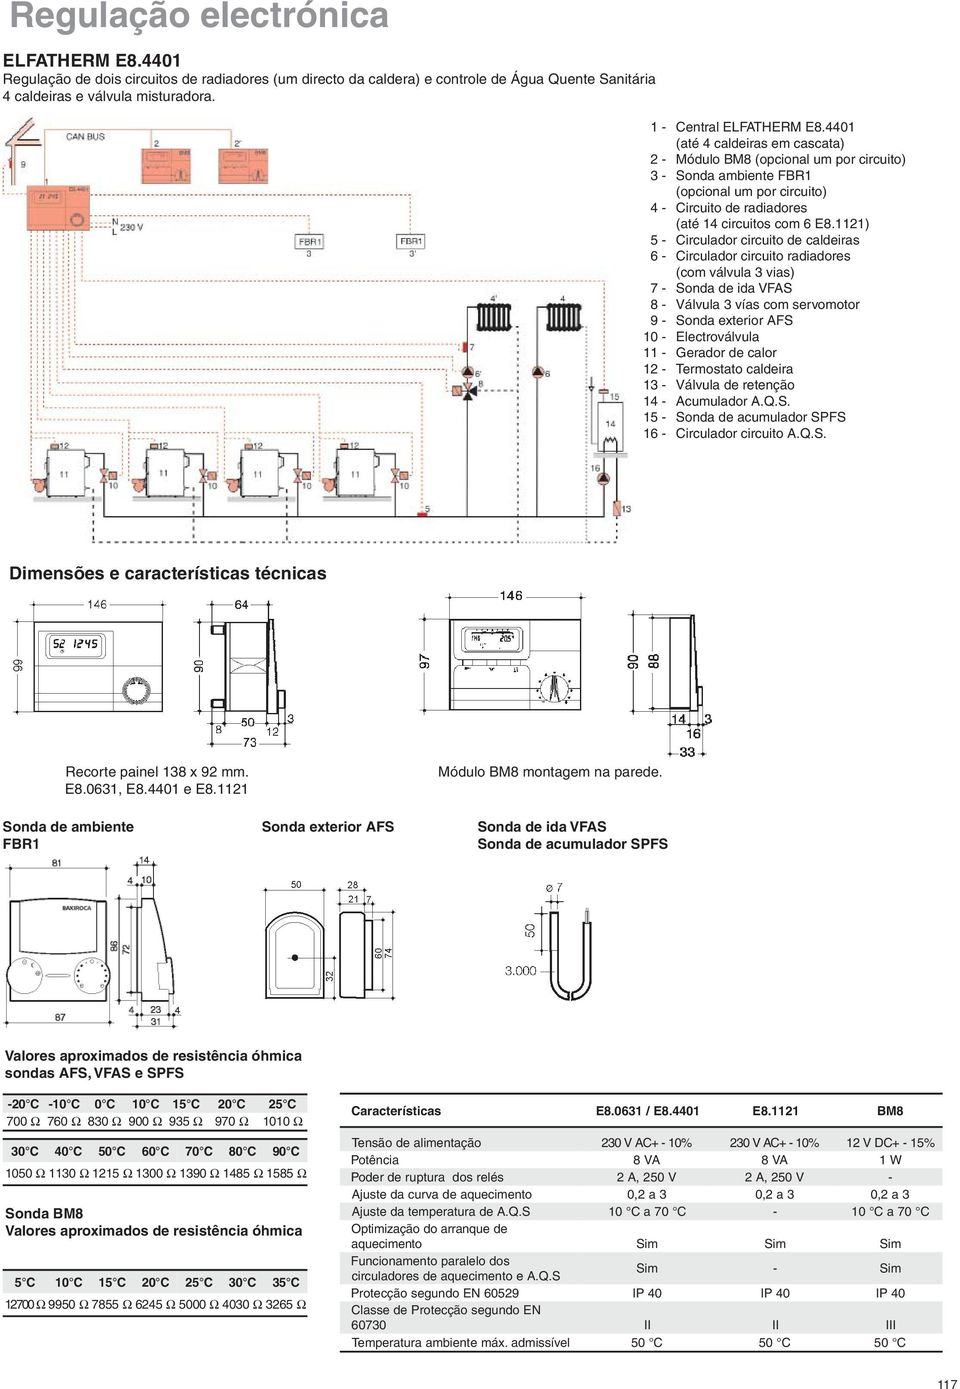 1121) Circulador circuito de caldeiras Circulador circuito radiadores (com válvula 3 vias) Sonda de ida VFAS Válvula 3 vías com servomotor S Electroválvula Gerador de calor Termostato caldeira